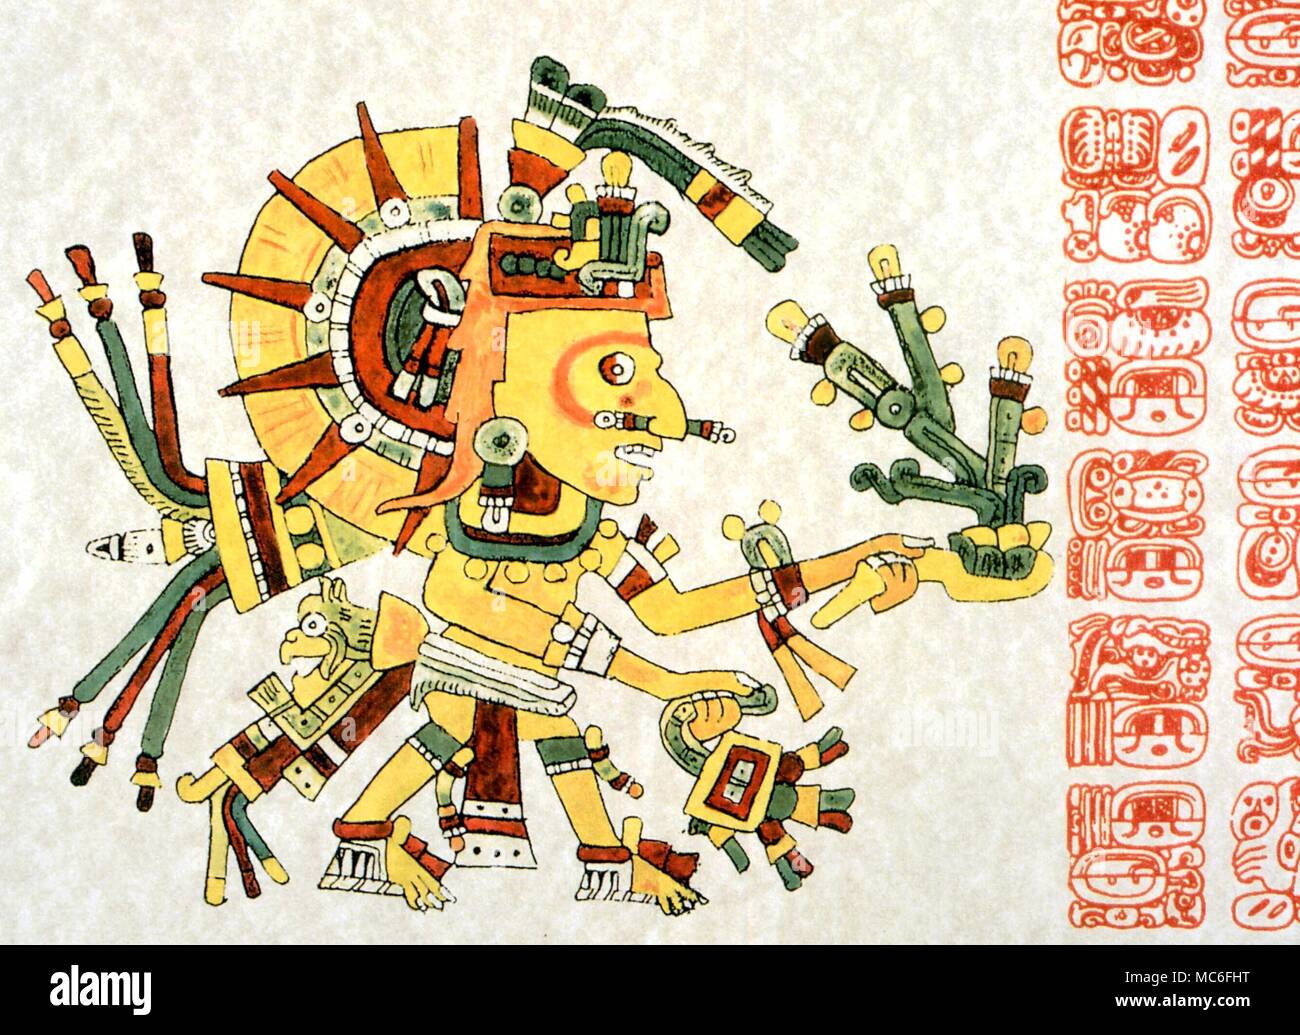 Le dieu soleil astrologie mexicaine, Tonatiuh, befgore permanent un temple pour recevoir de l'adulation et de culte. Oeuvre artistique sur sur le Codex Cospi, dans la bibliothèque à la Bologna Universioty Banque D'Images